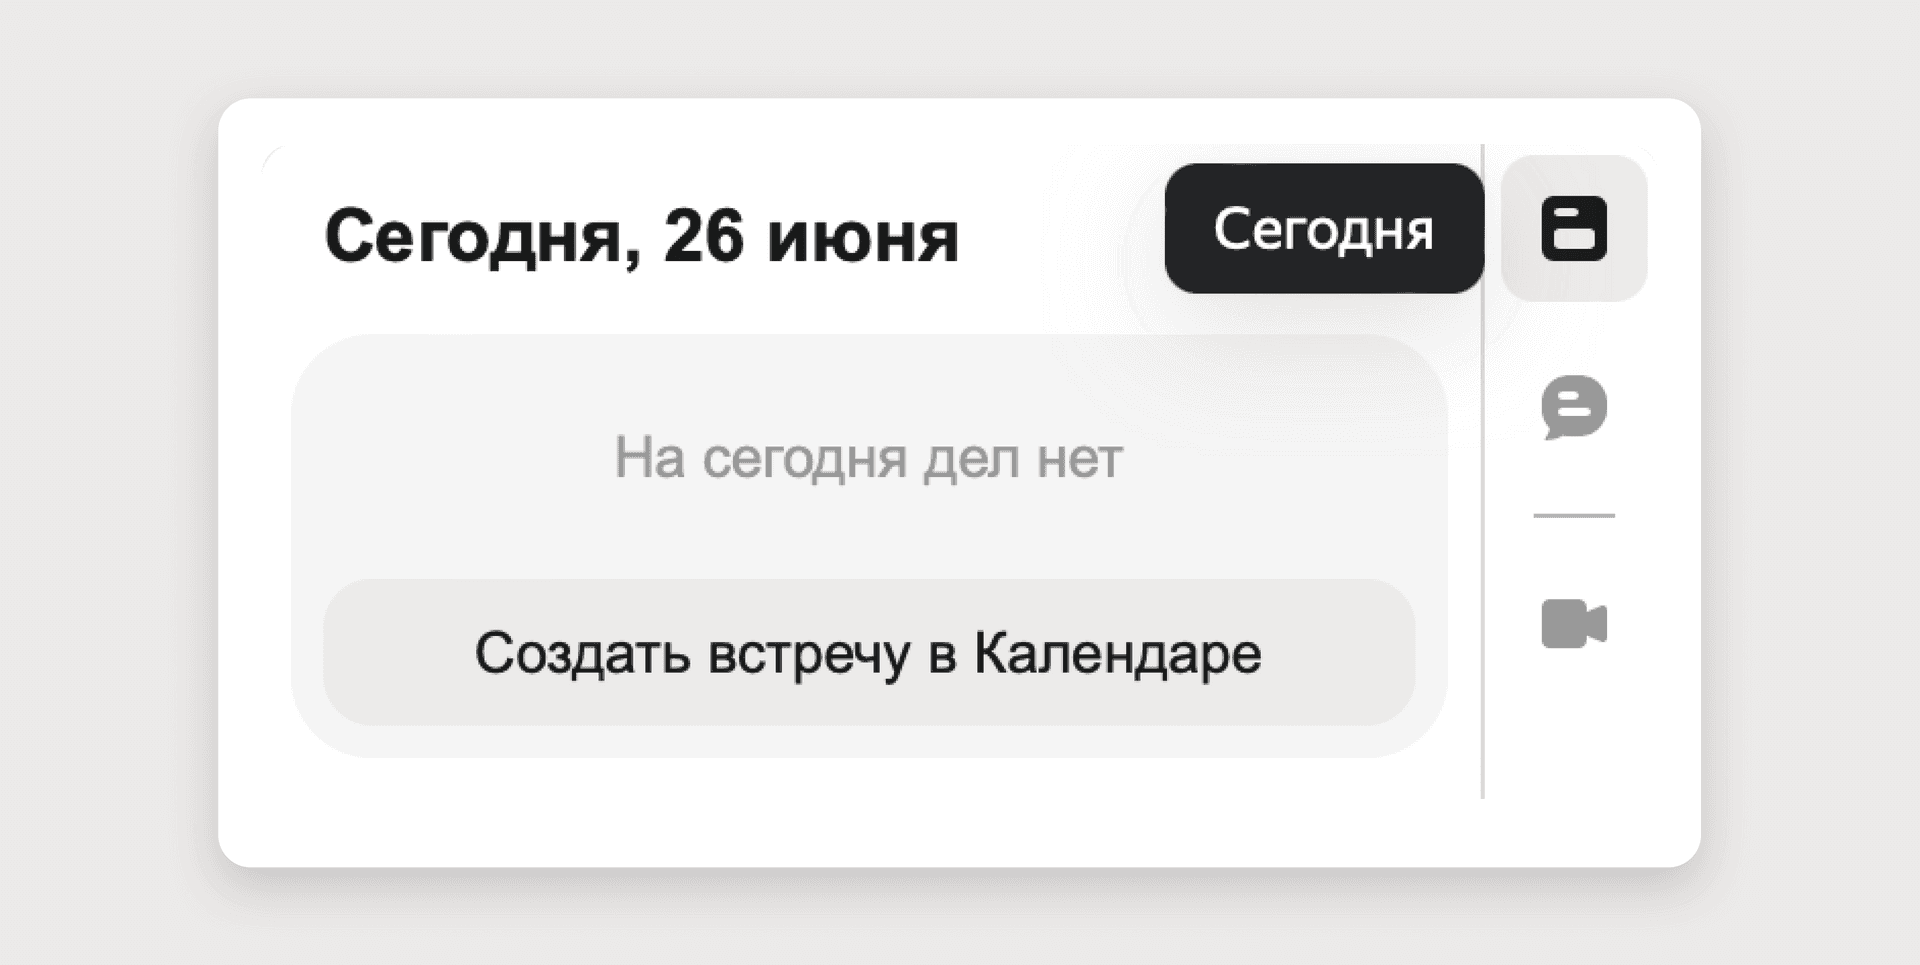 Подключили_Яндекс_360_Скриншот_4